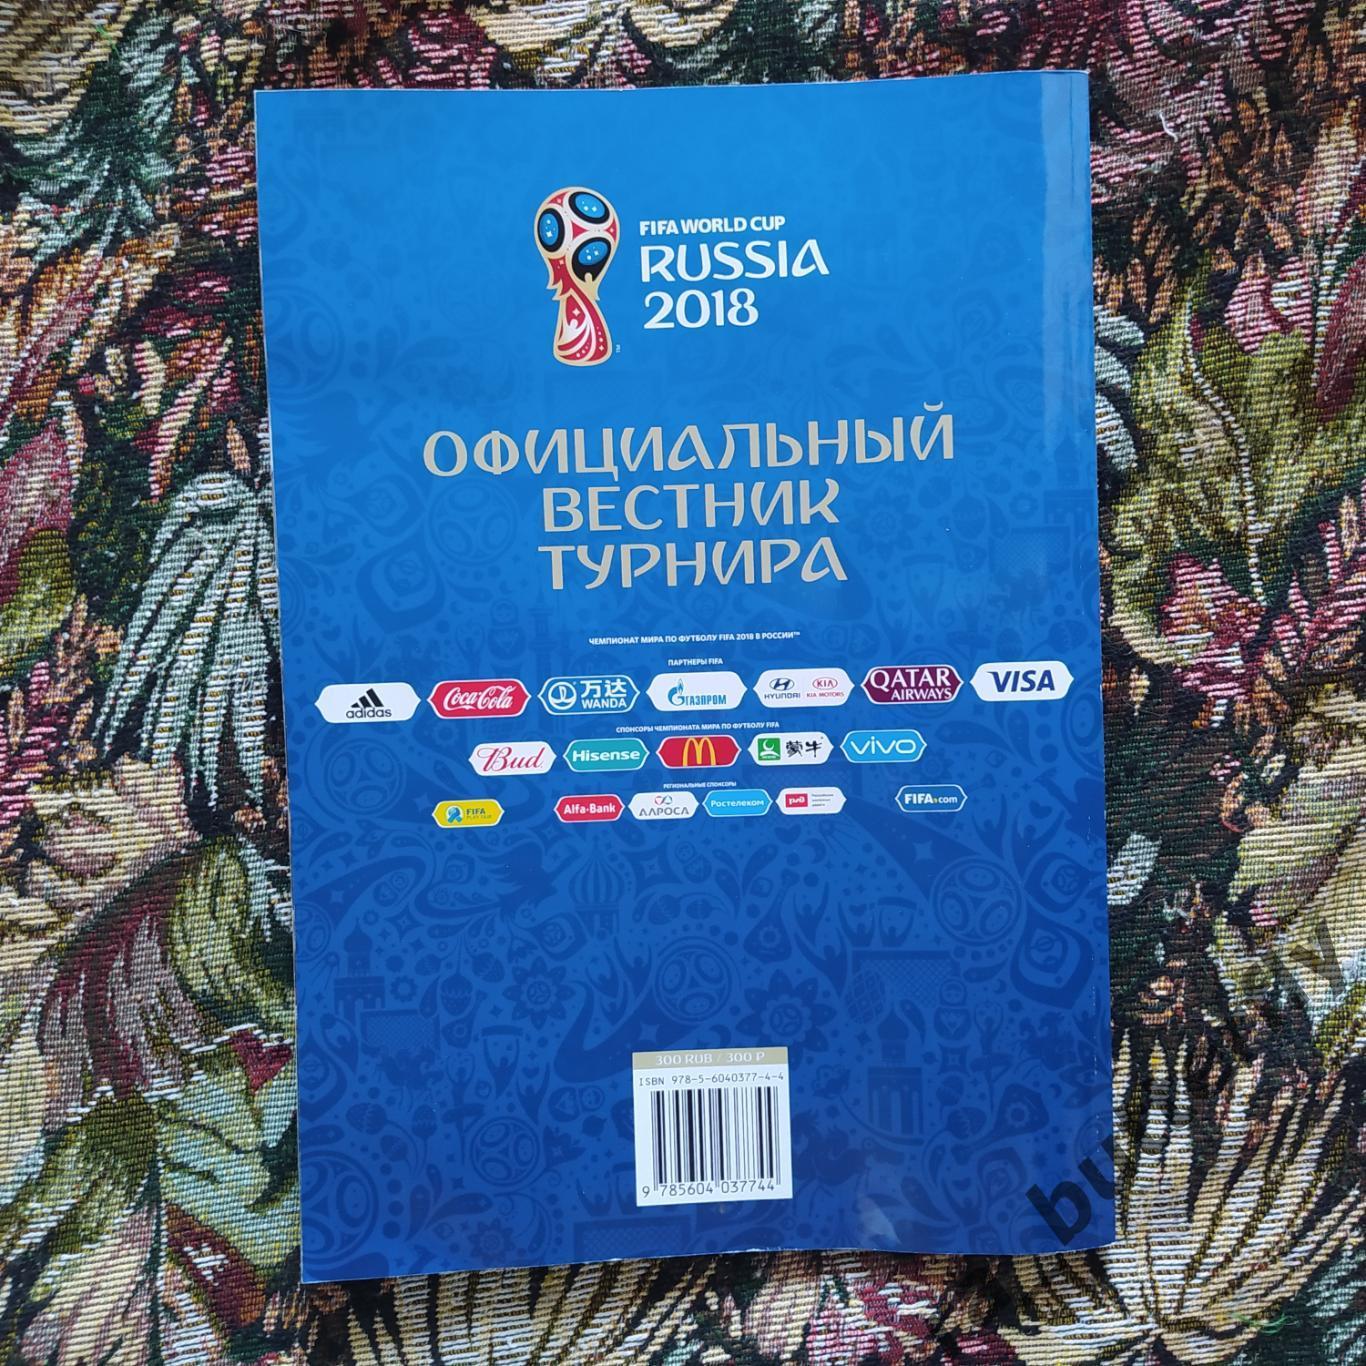 Чемпионат мира 2018 в России. Официальный вестник турнира 1